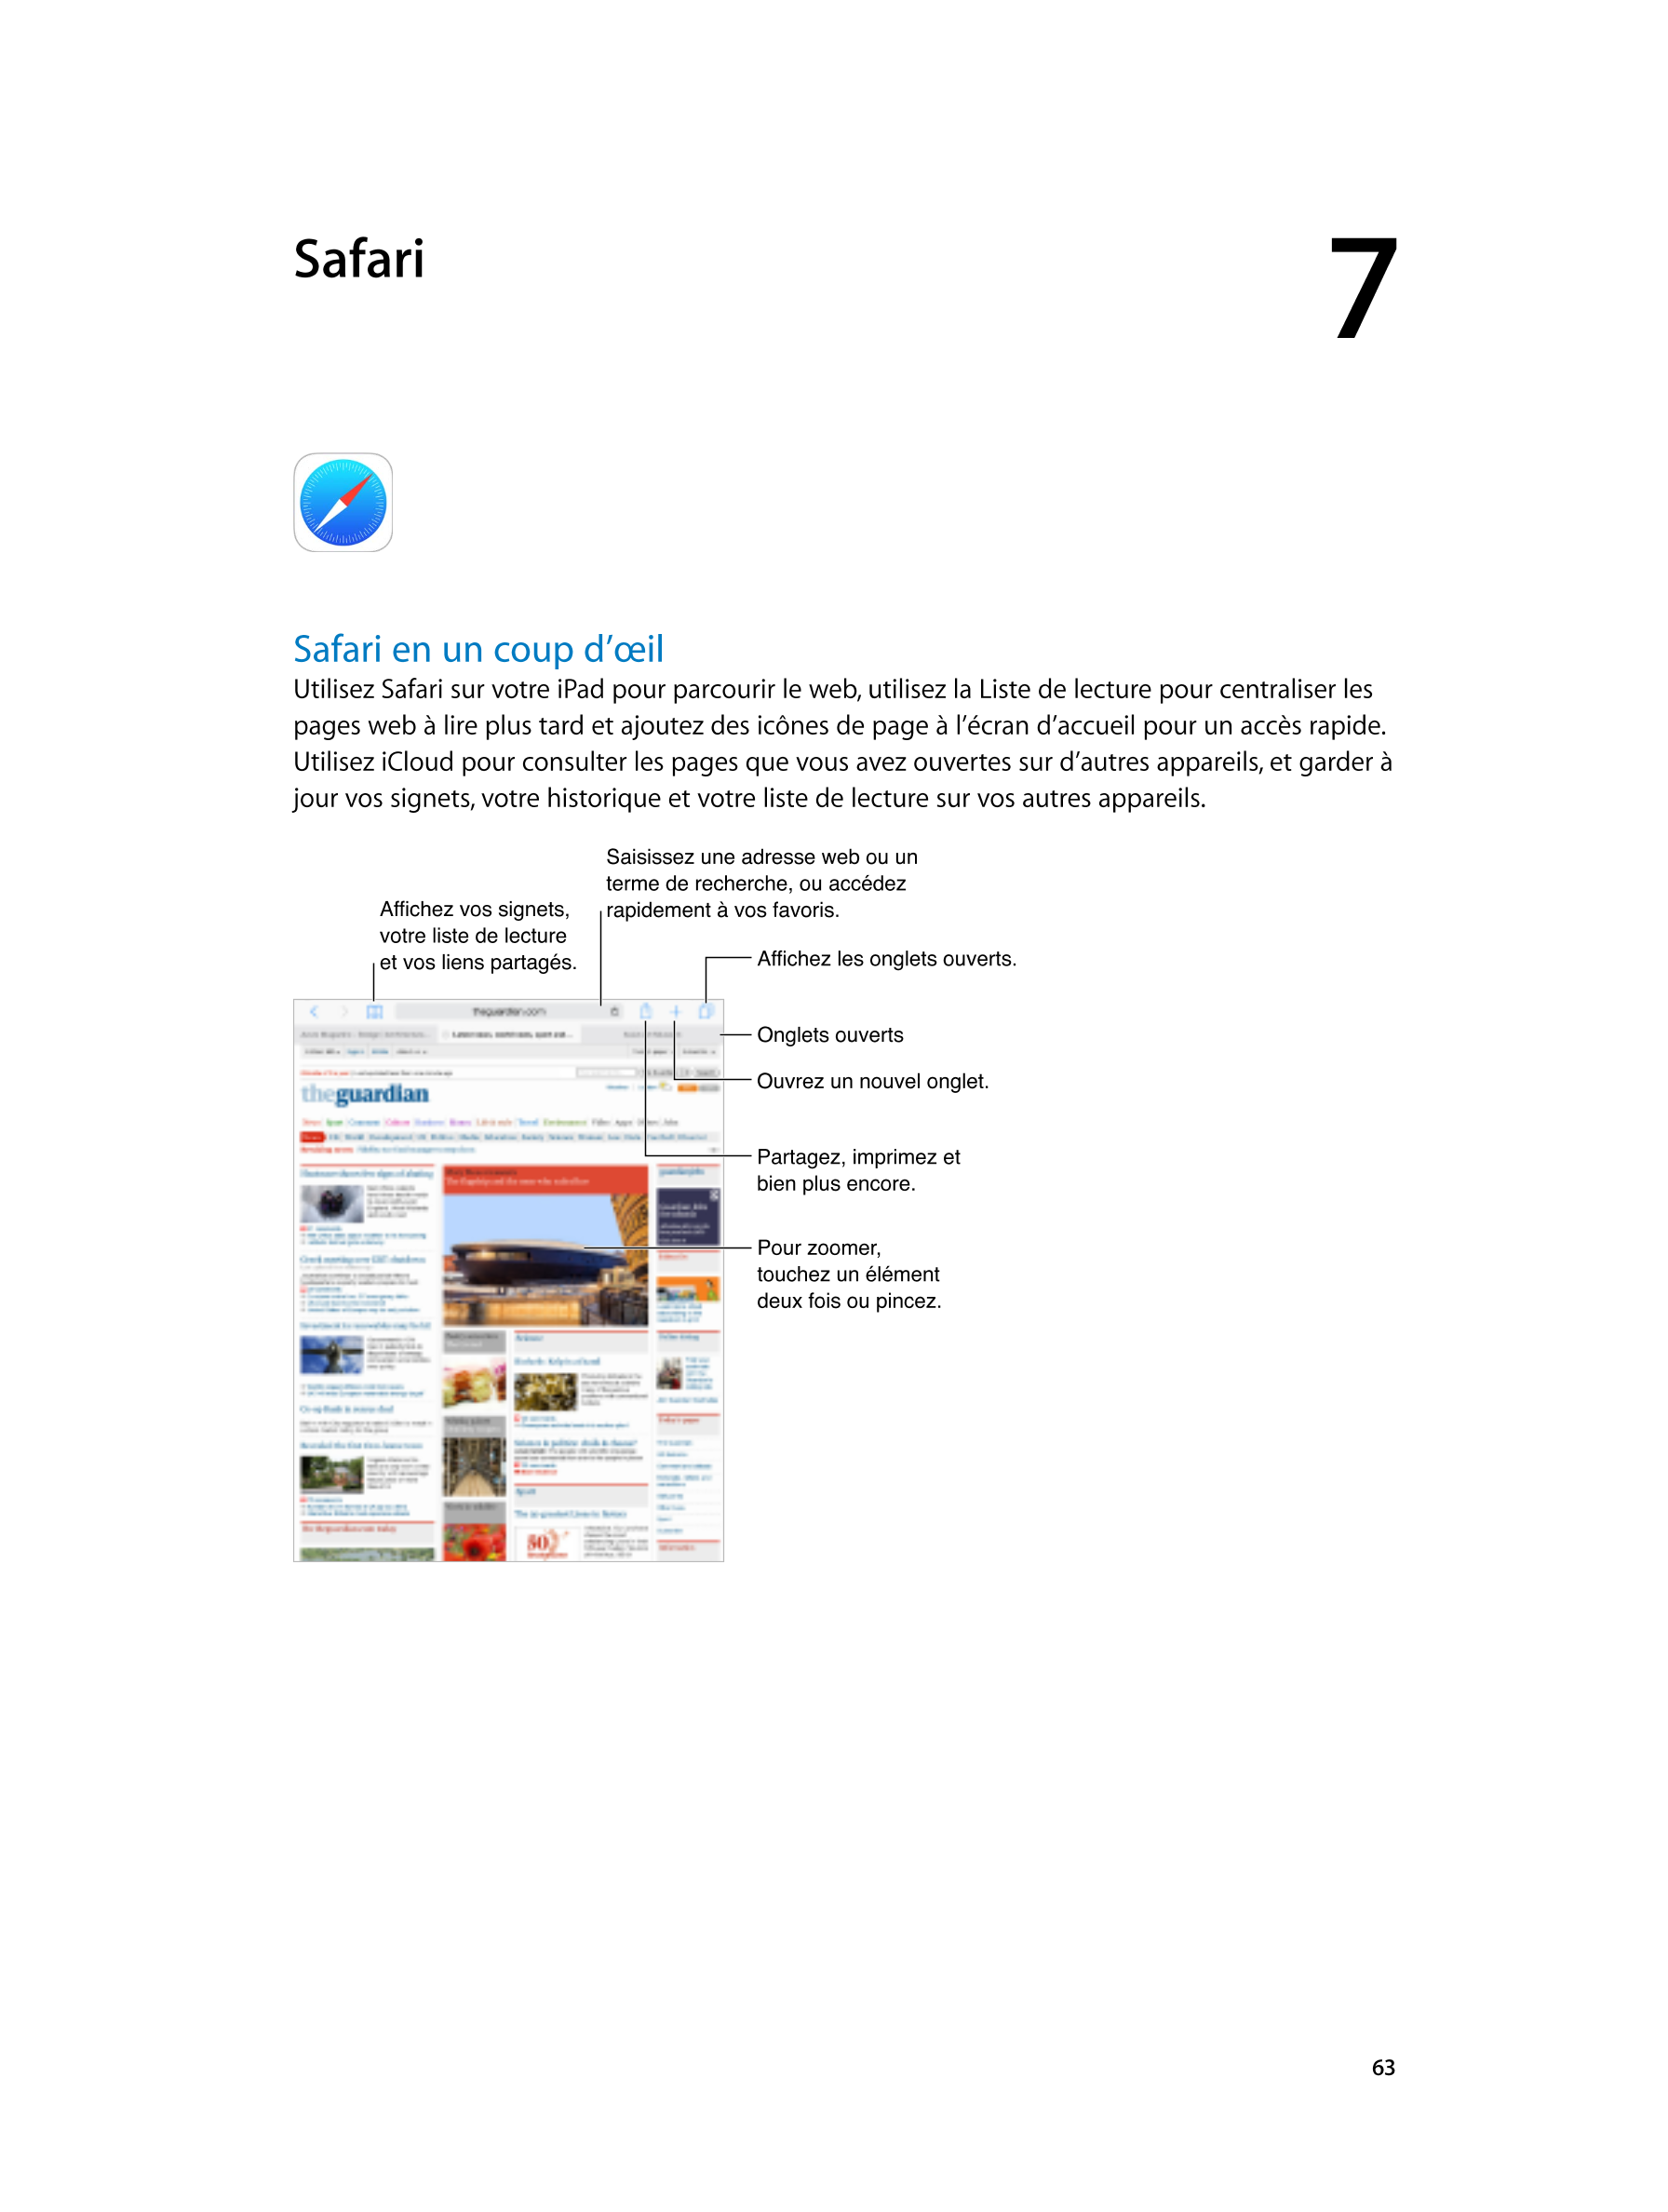  Safari 7  
Safari en un coup d’œil
Utilisez Safari sur votre iPad pour parcourir le web, utilisez la Liste de lecture pour cent